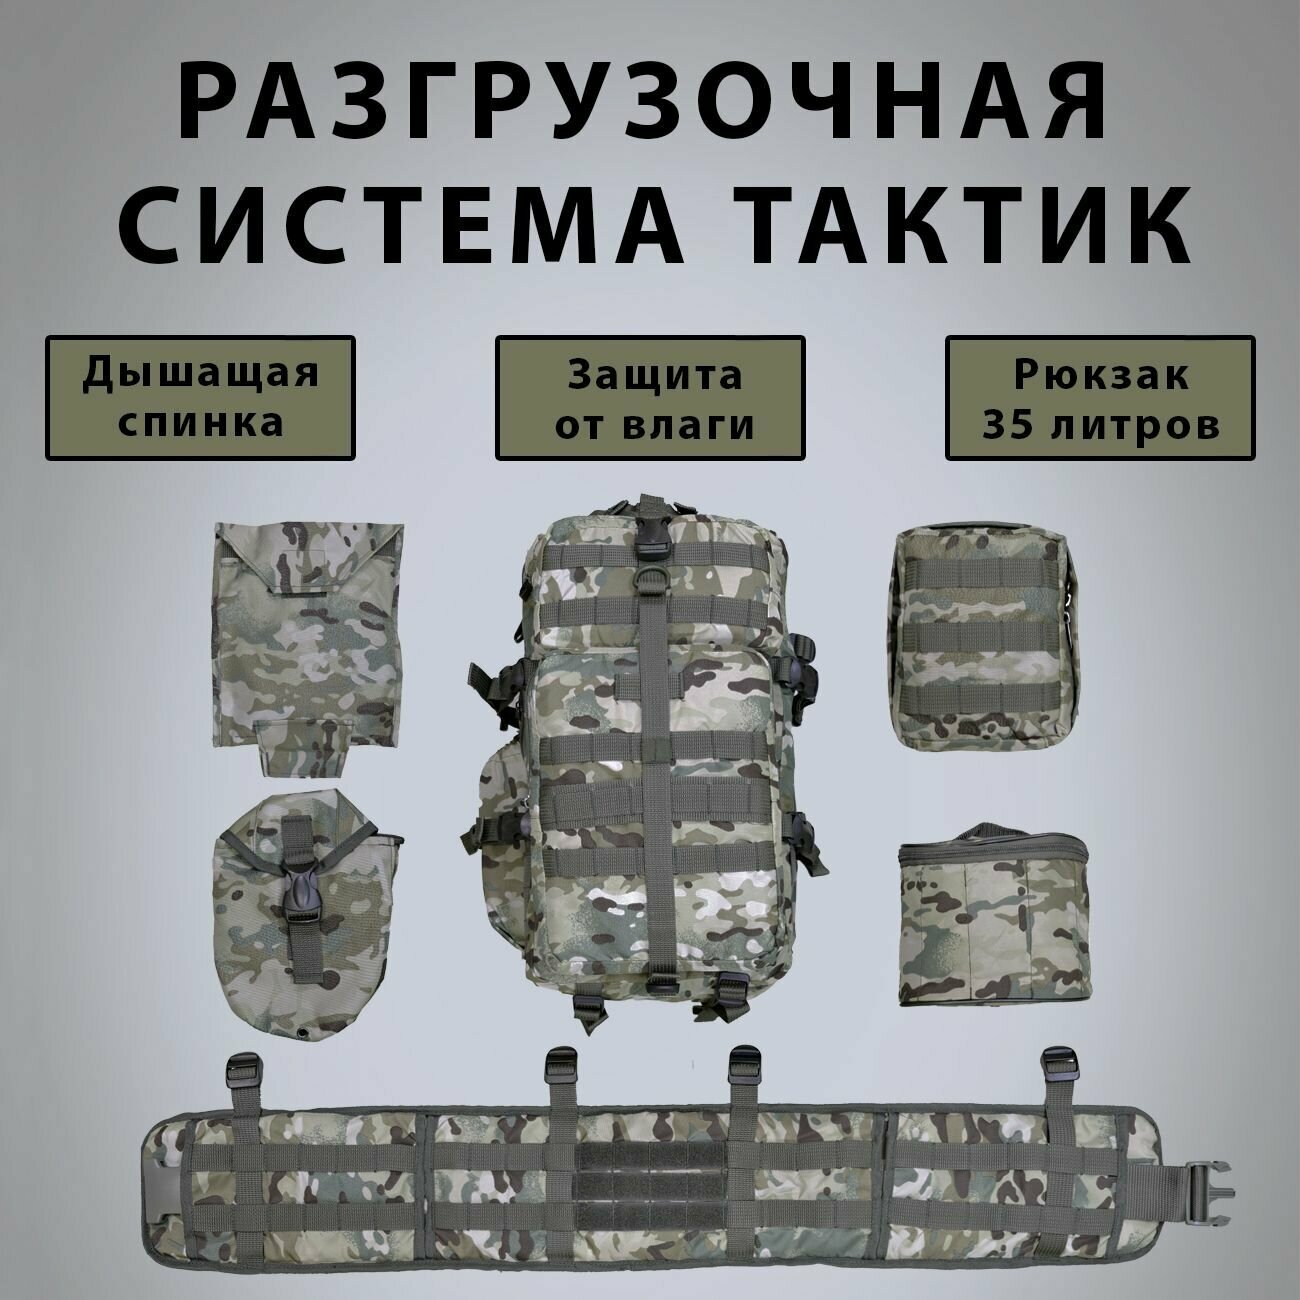 Разгрузочная система тактик разгрузка тактическая армейская 7 предметов мультикам